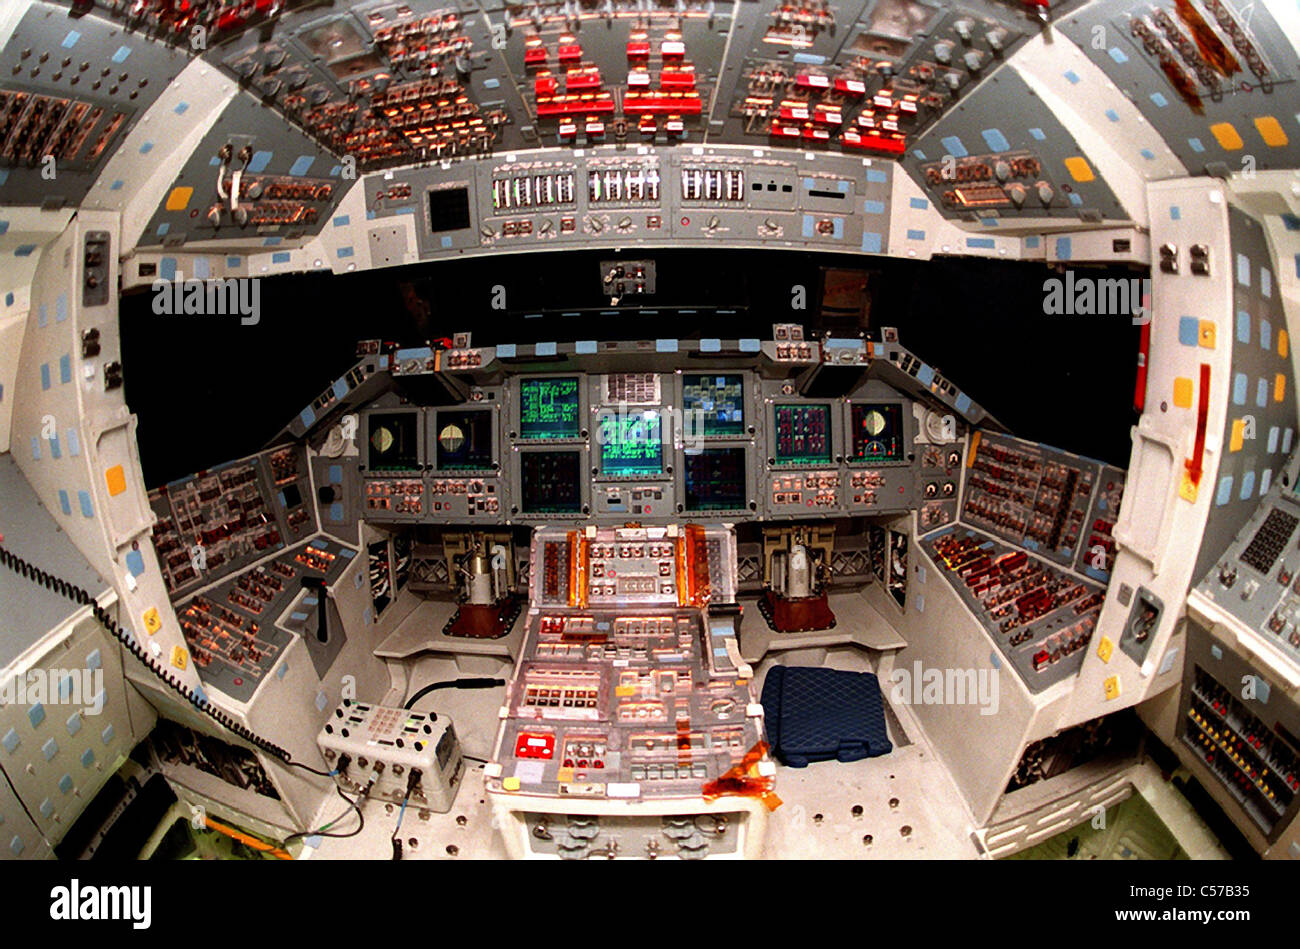 La navette spatiale Atlantis vue sur le moniteur à écran plat dans le glass cockpit. Atlantis est sur la dernière mission. Banque D'Images